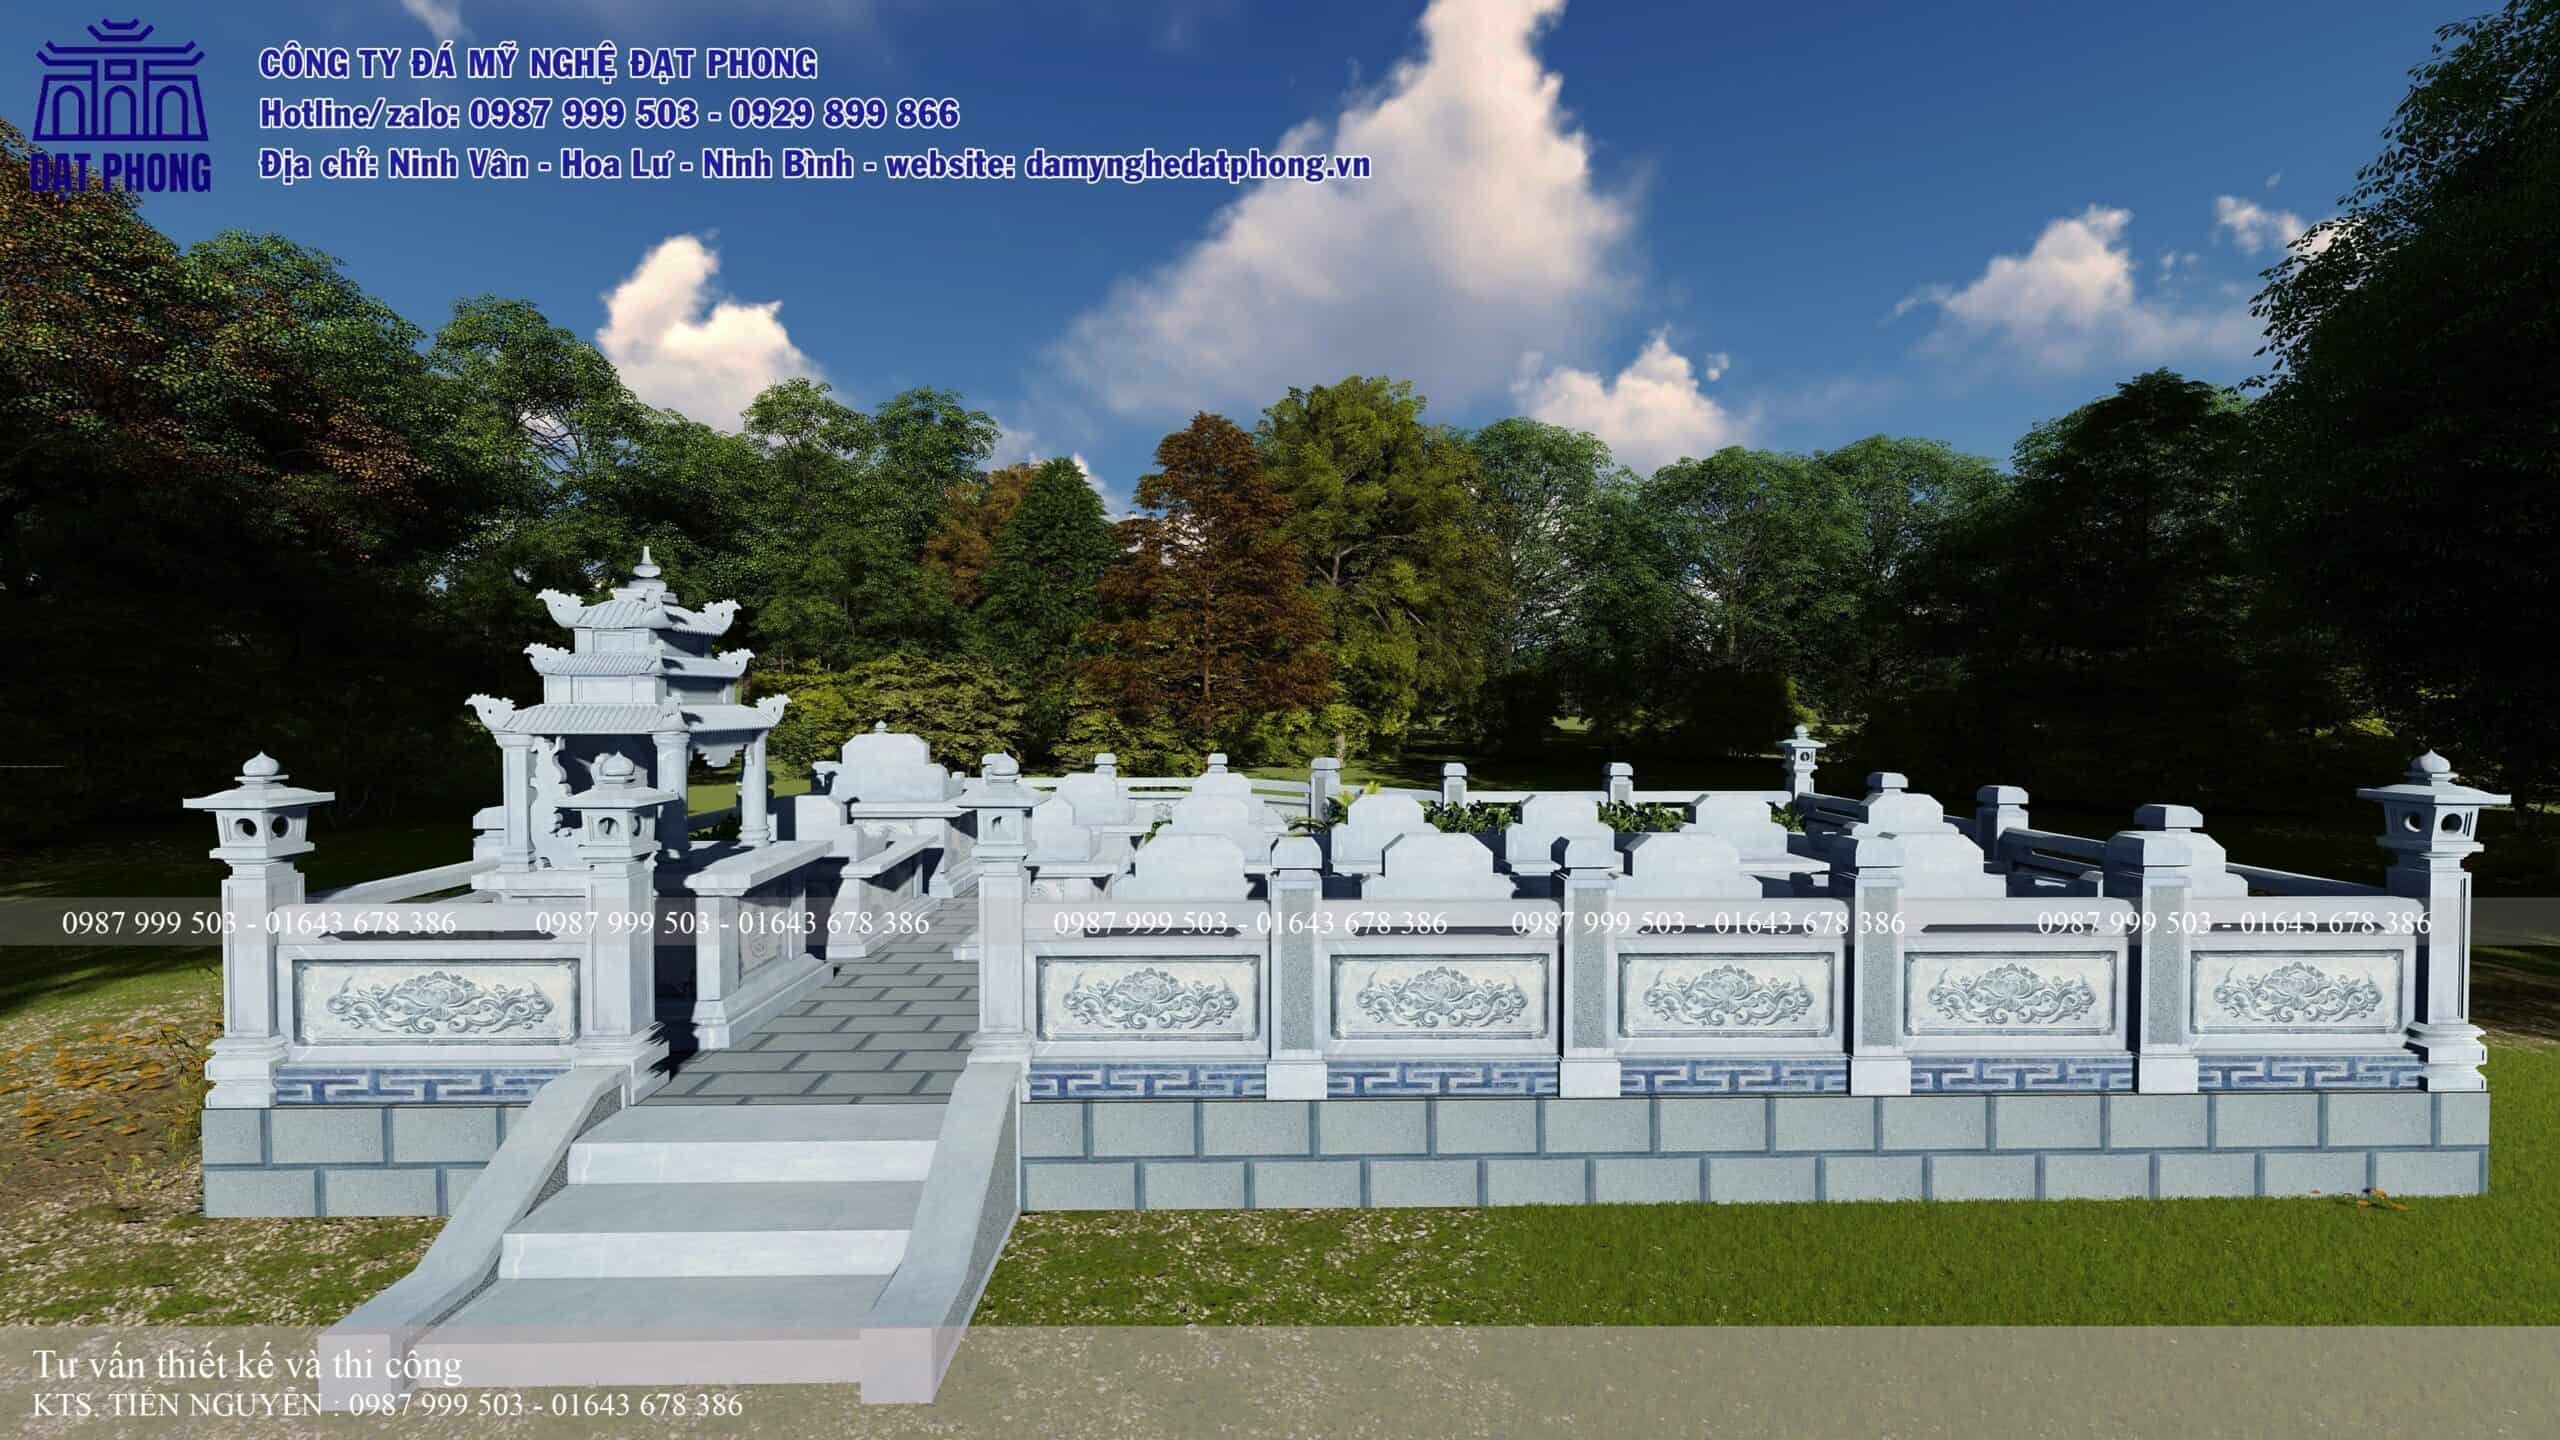 Bức bình phong trấn yểm chạm rồng được đặt ngay cổng vào khu lăng mộ gia đình tại Thường Tín - Hà Nội